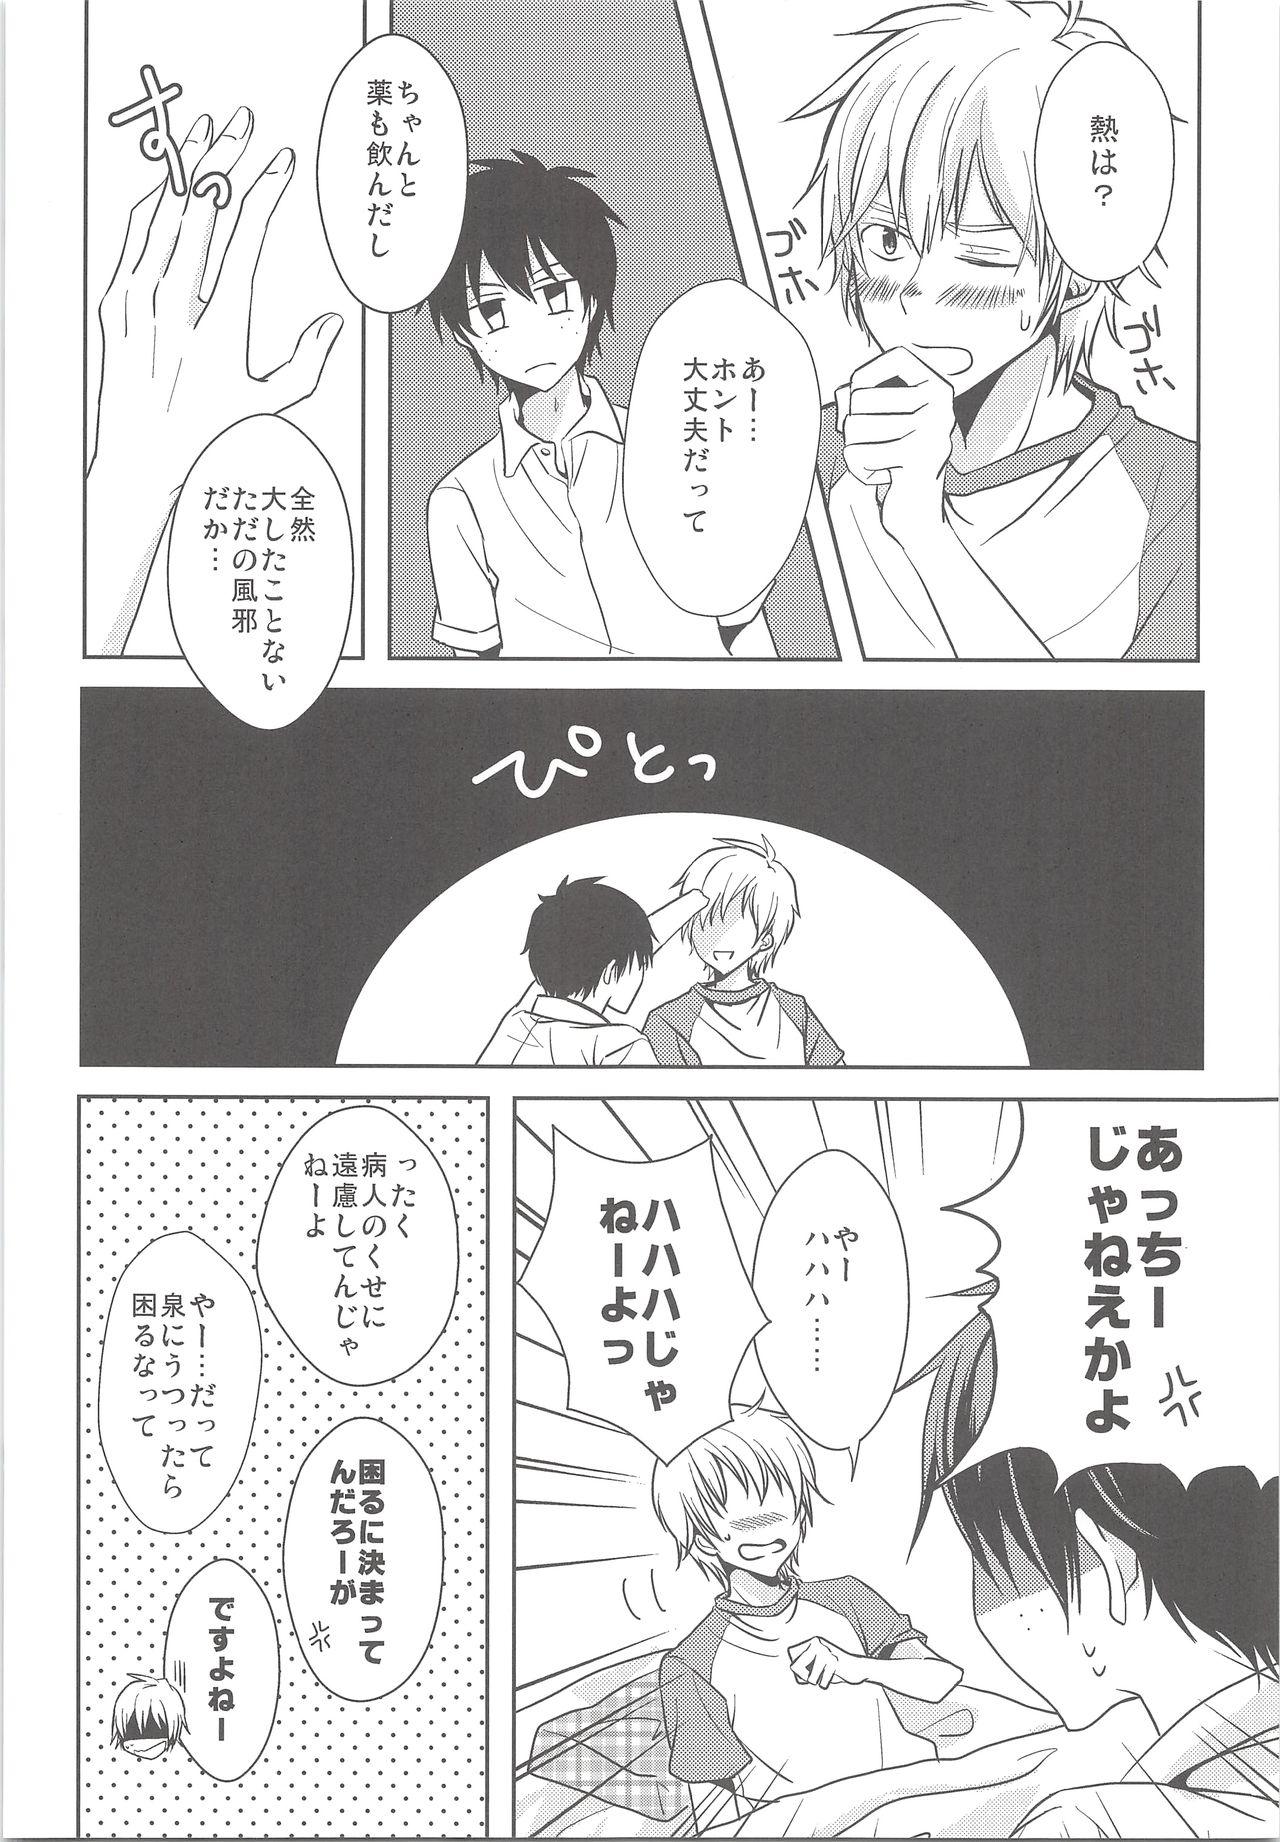 Fresh Natsu Kaze wa Baka ga Hiku! - Ookiku furikabutte 8teen - Page 5